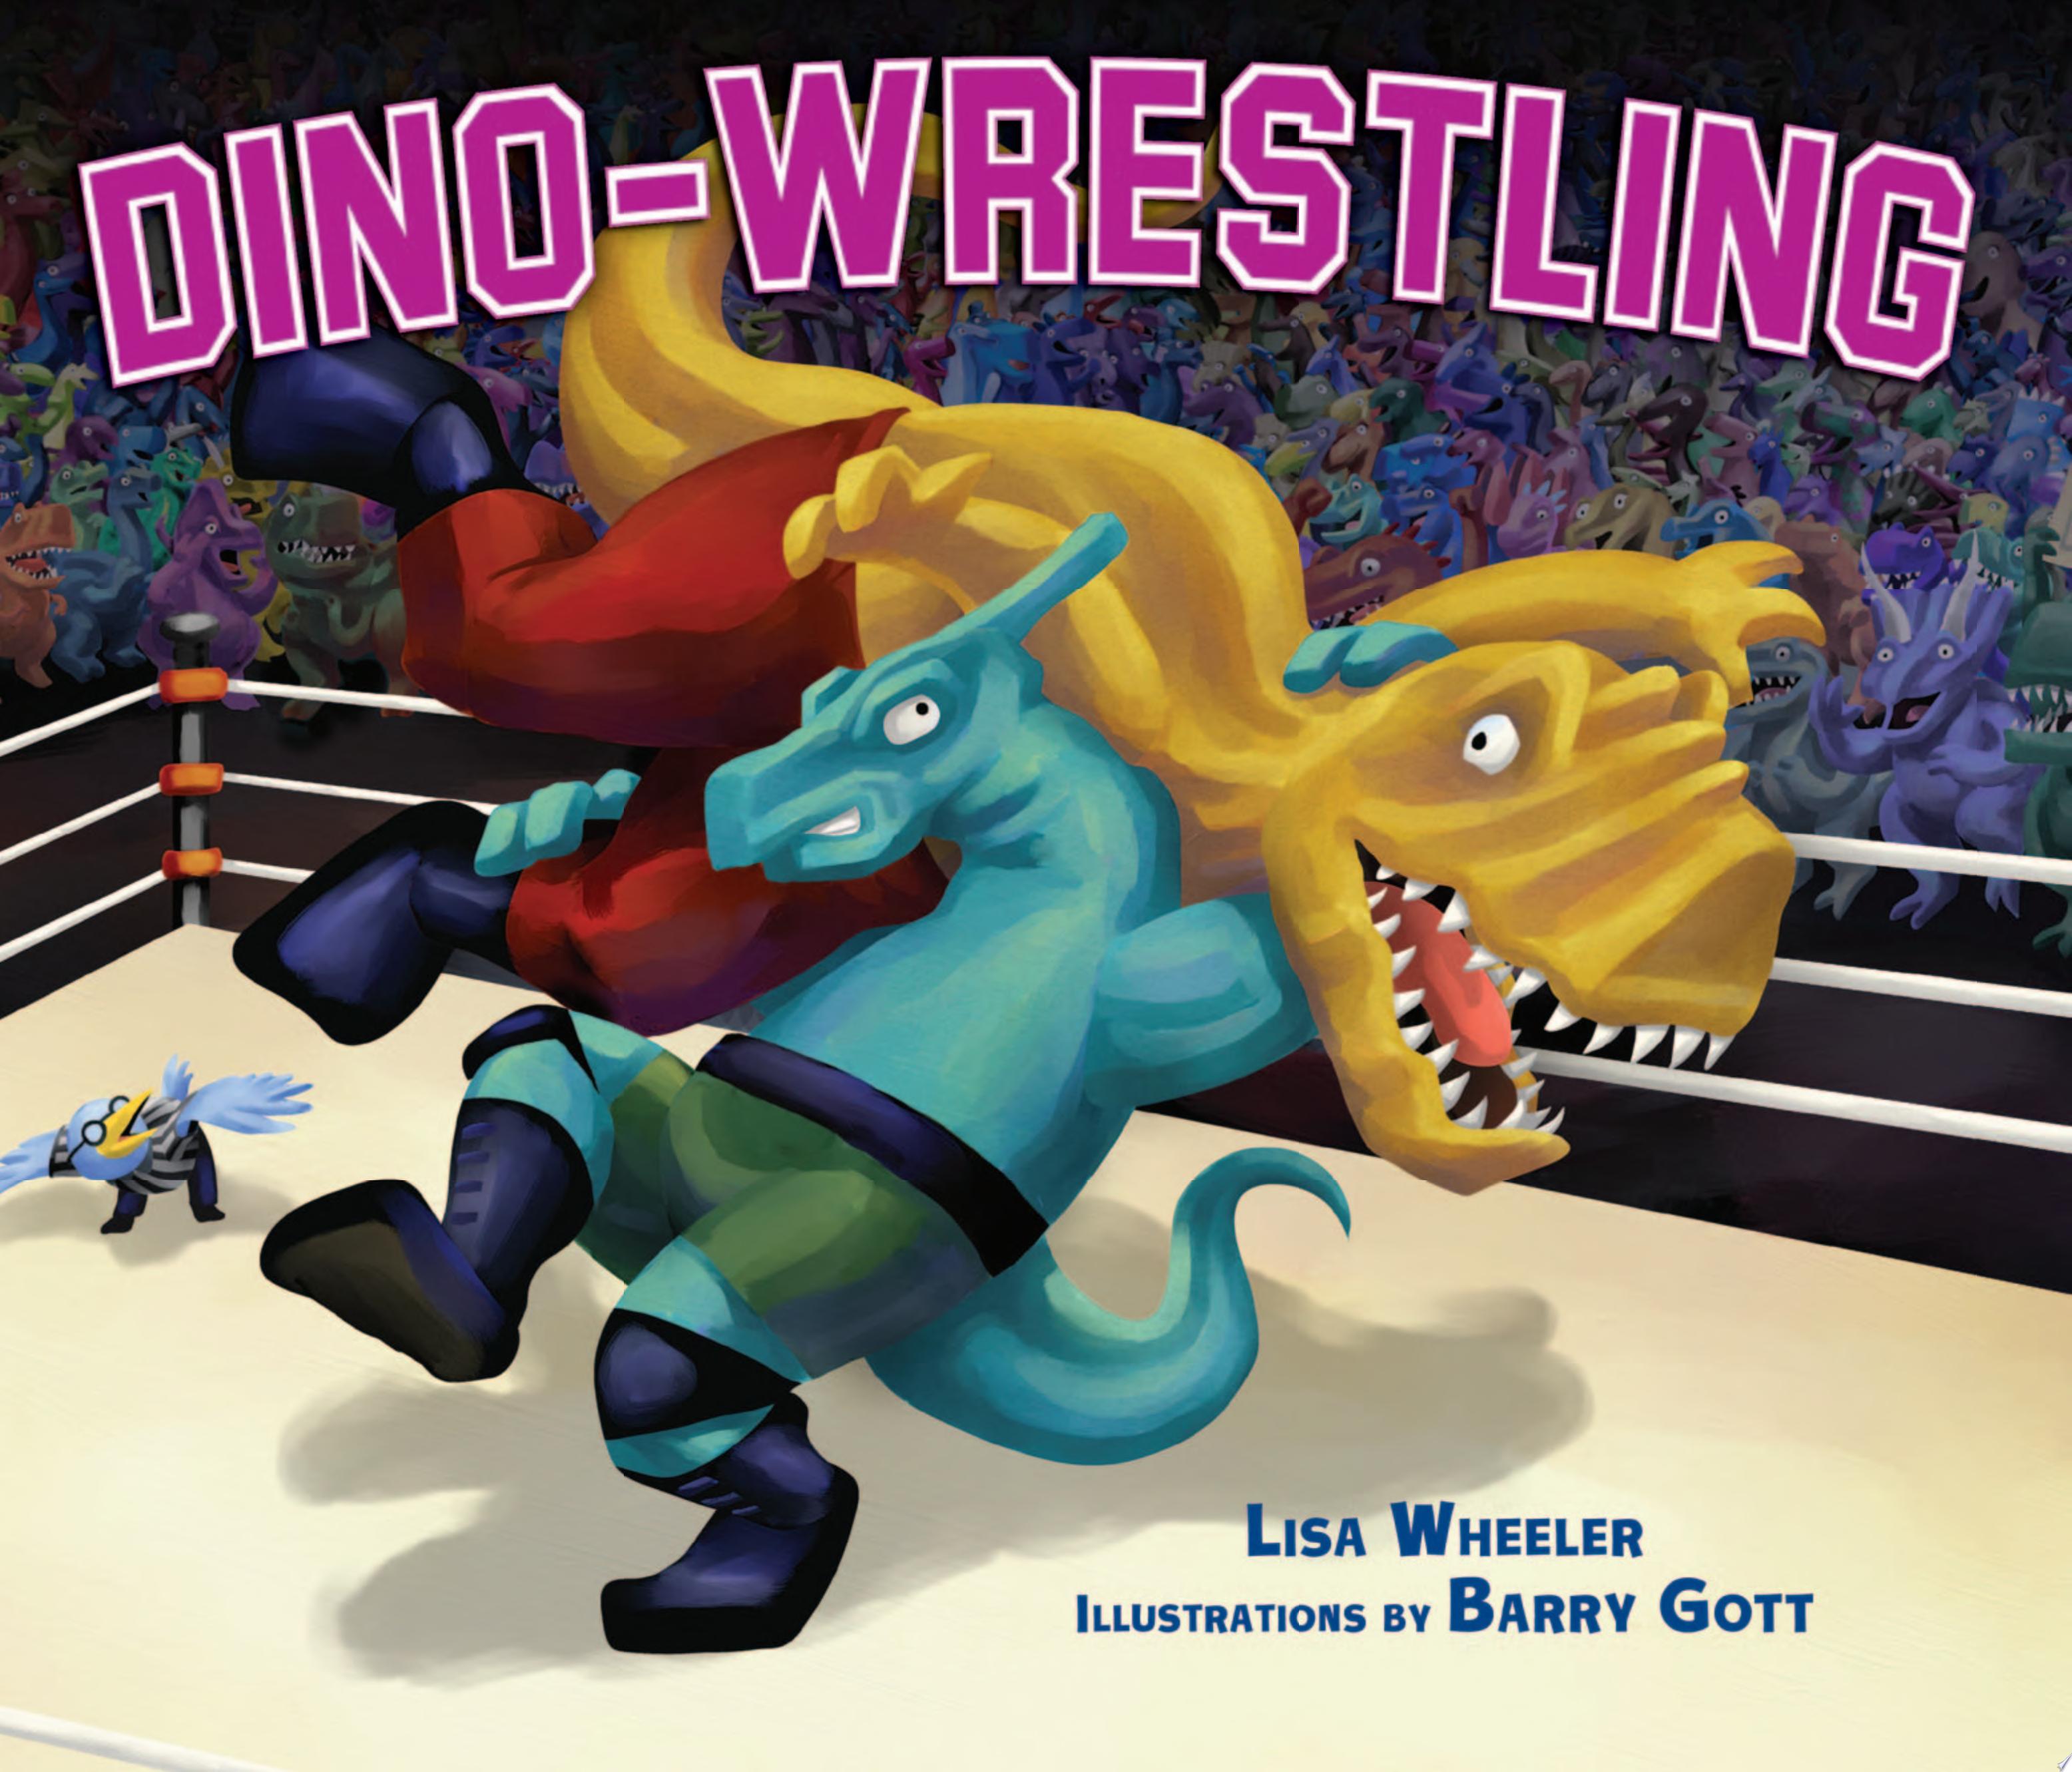 Image for "Dino-Wrestling"